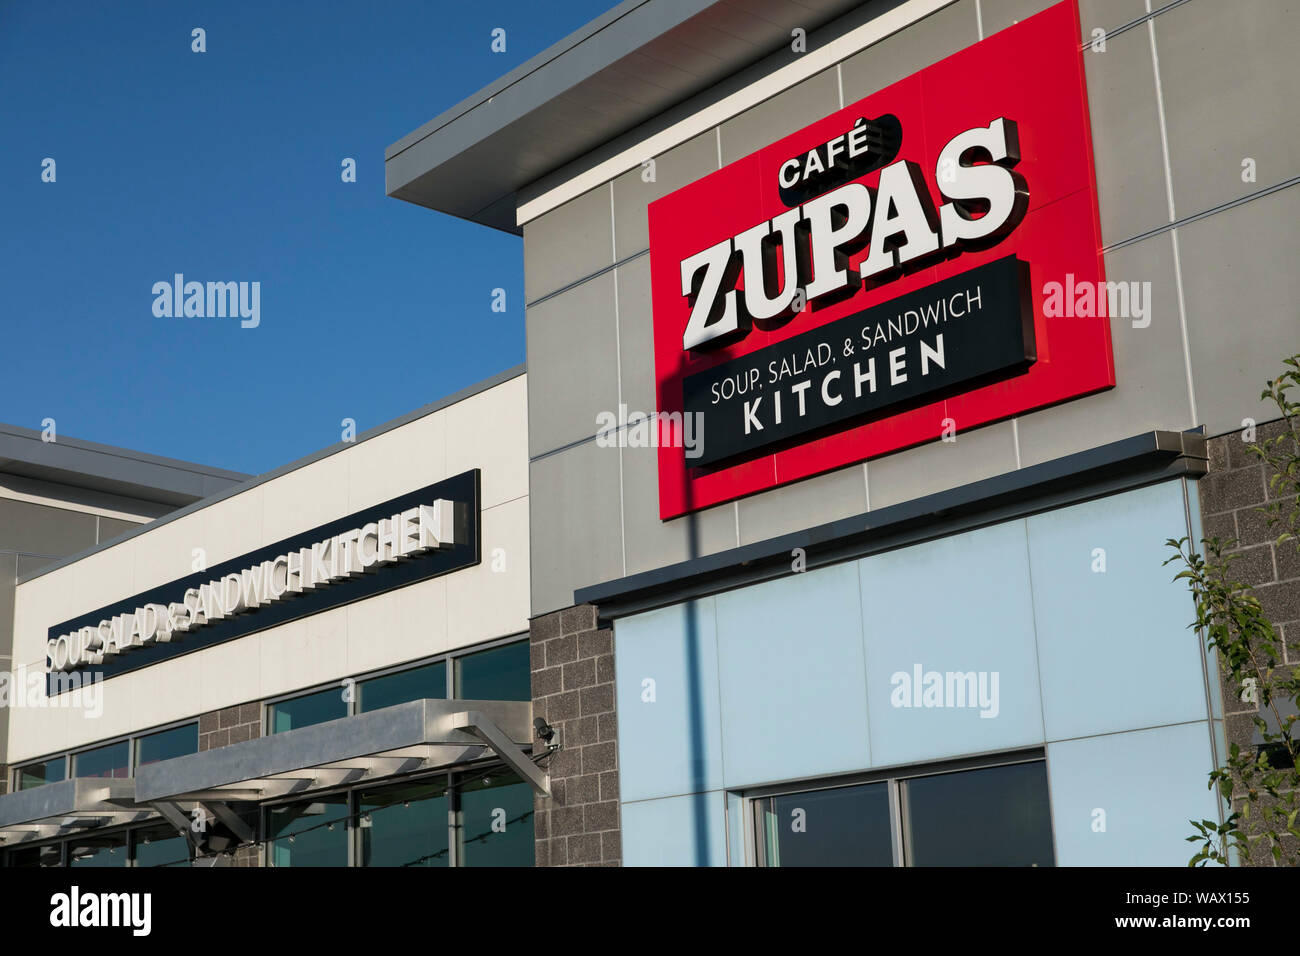 Ein logo Zeichen außerhalb eines Cafe Zupas Restaurant Lage in Lehi, Utah am 28. Juli 2019. Stockfoto